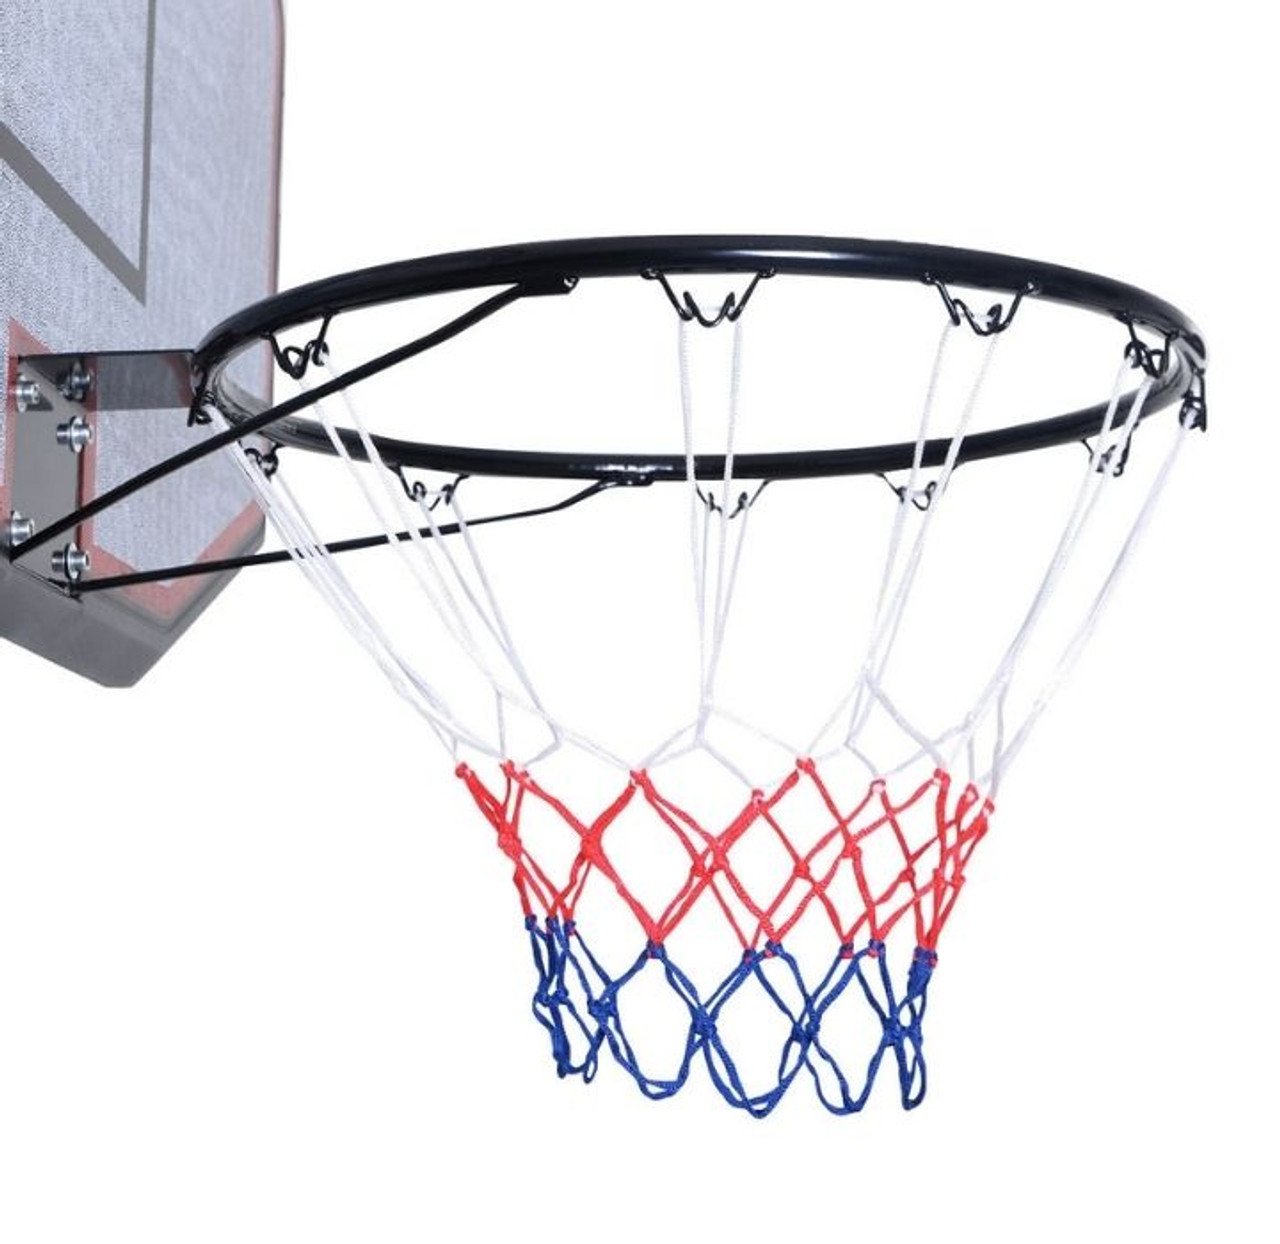 Indoor/Outdoor Adjustable Height 10-Foot Basketball Hoop product image